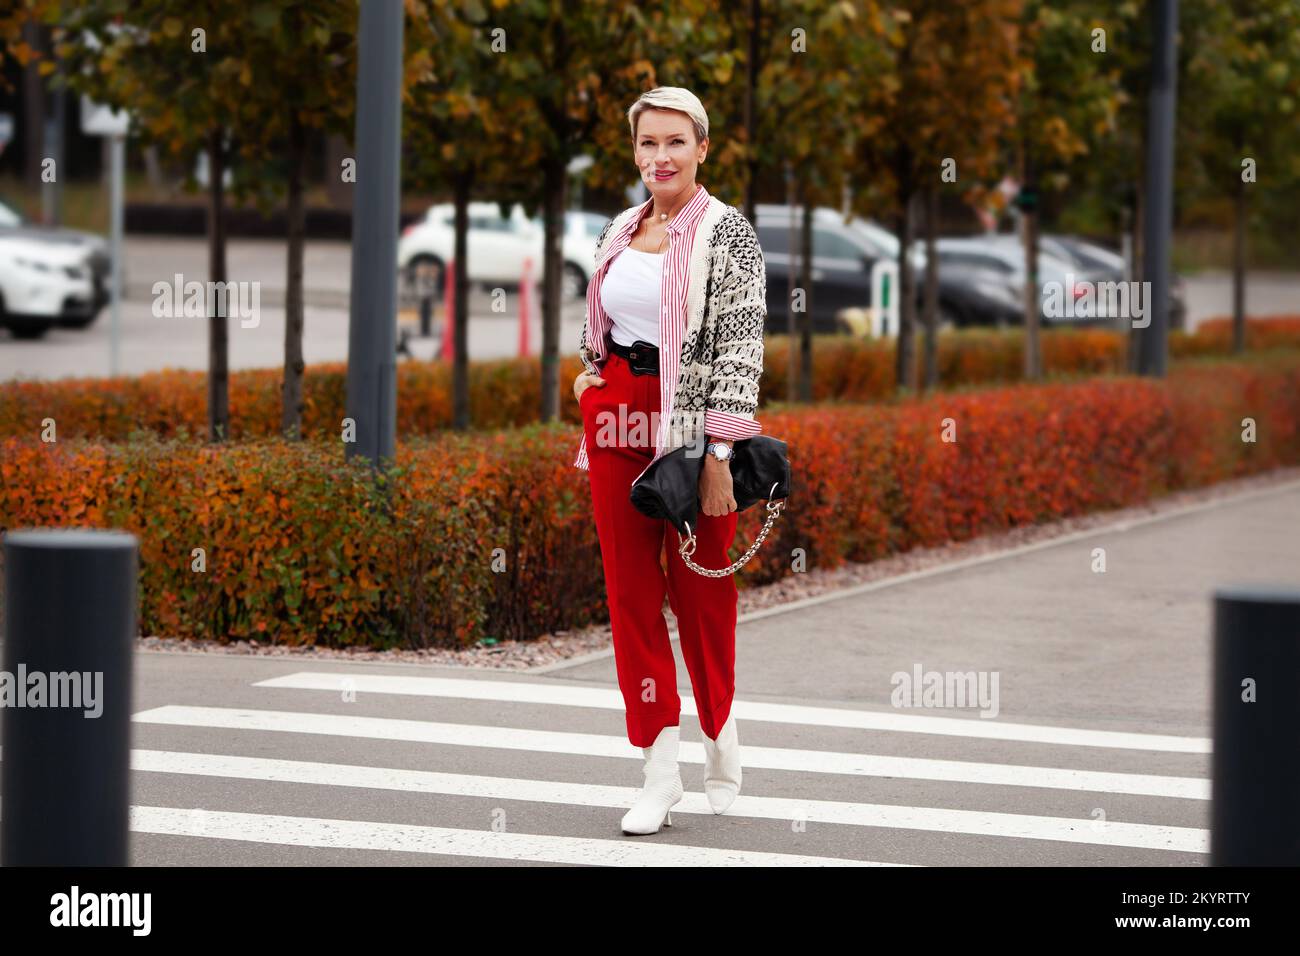 Tendance de la mode pour l'automne. Femme avec une coupe courte qui marche  de l'autre côté de la rue, portant un pantalon rouge, une chemise à rayures,  un gilet tricoté, des chaussures